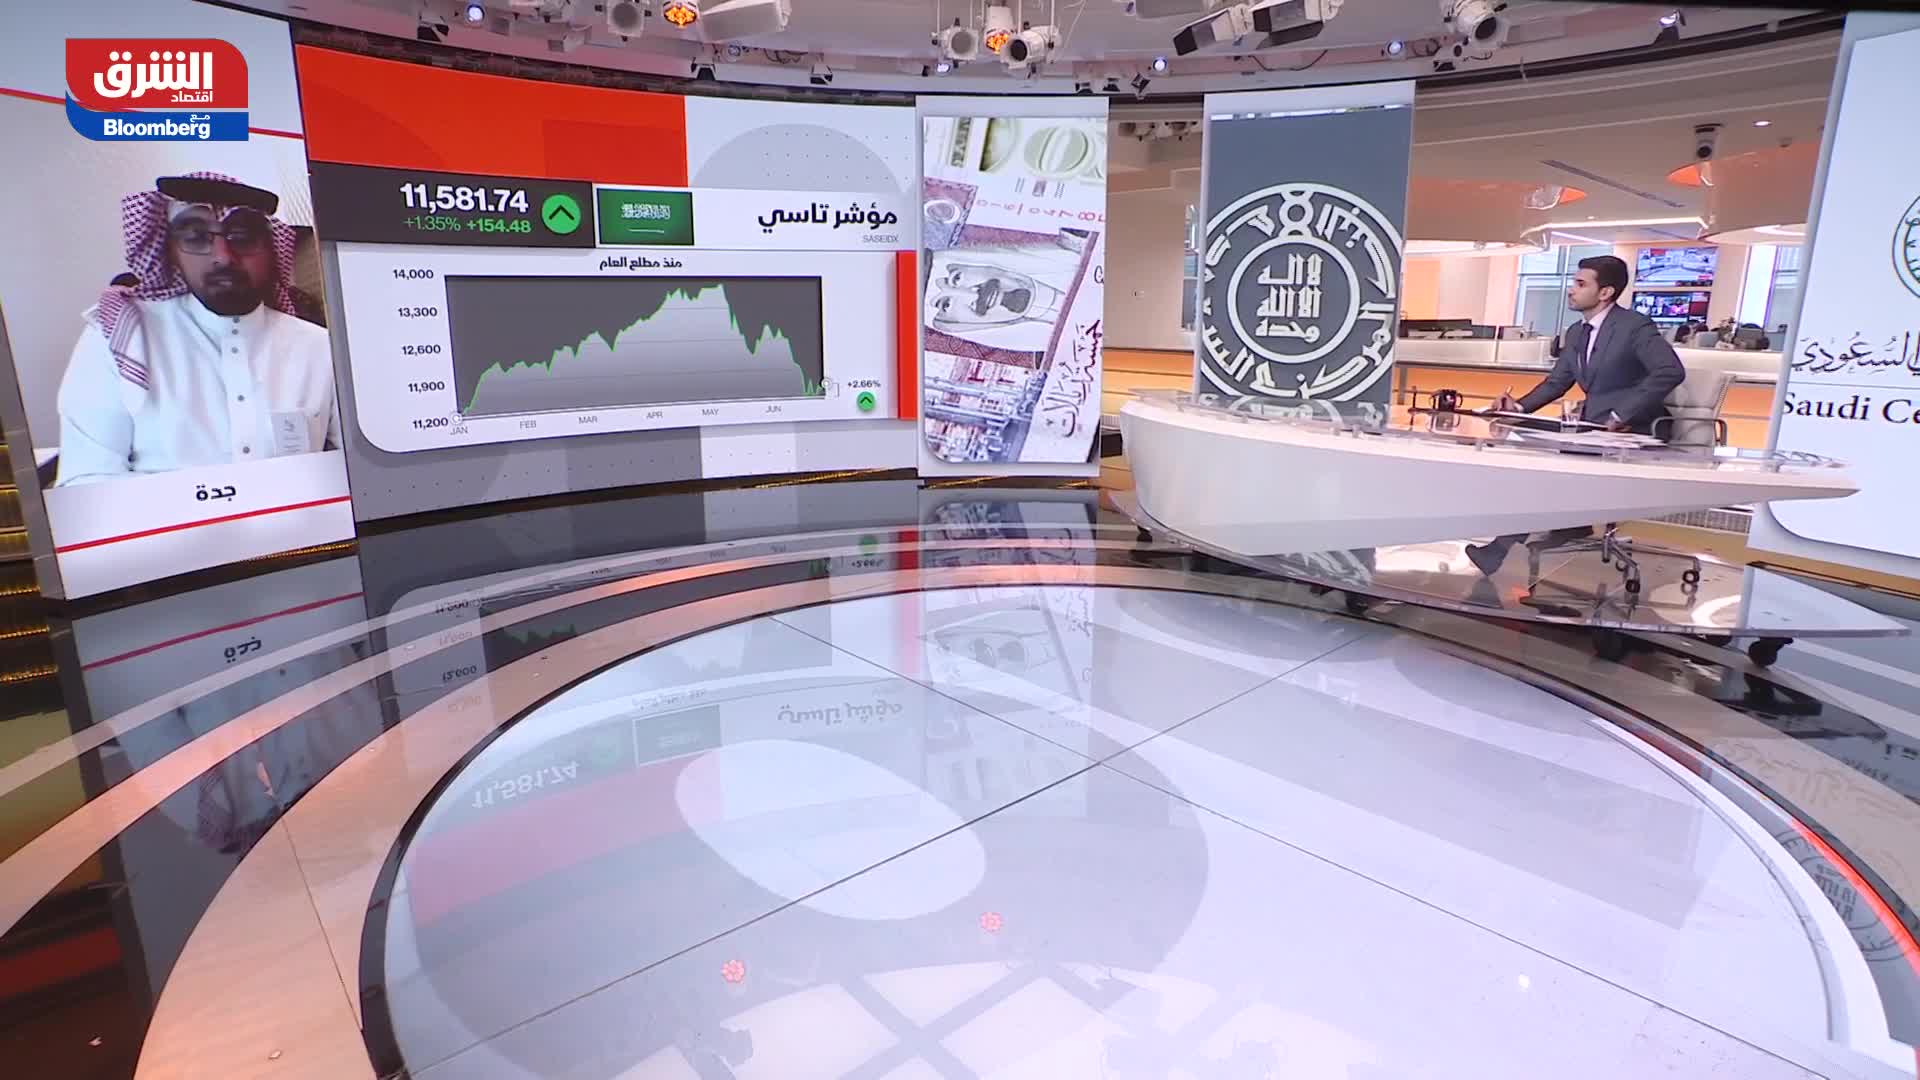 آل إبراهيم: السوق السعودي يشهد معدلات نمو اقتصادي بعكس الأسواق الأميركية والعالمية